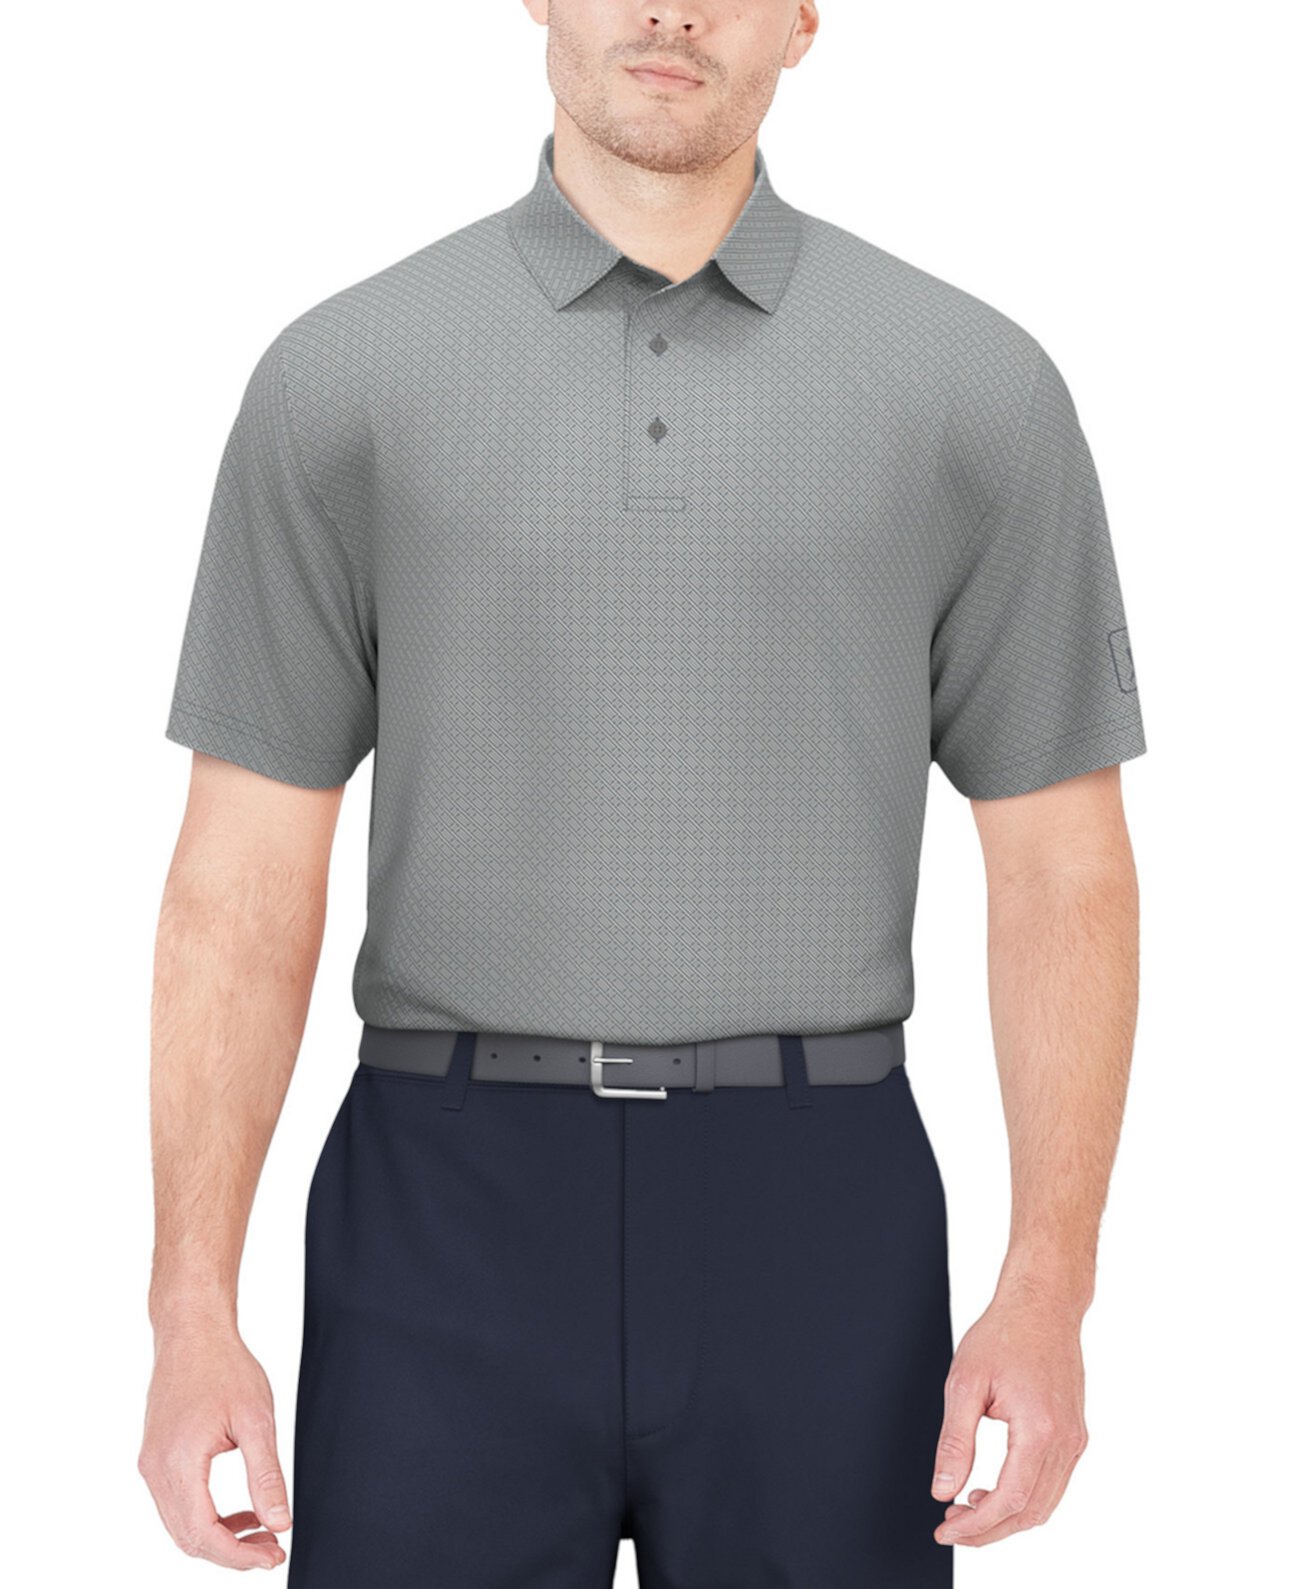 Мужская рубашка-поло с короткими рукавами из жаккардового принта с геометрическим рисунком PGA TOUR